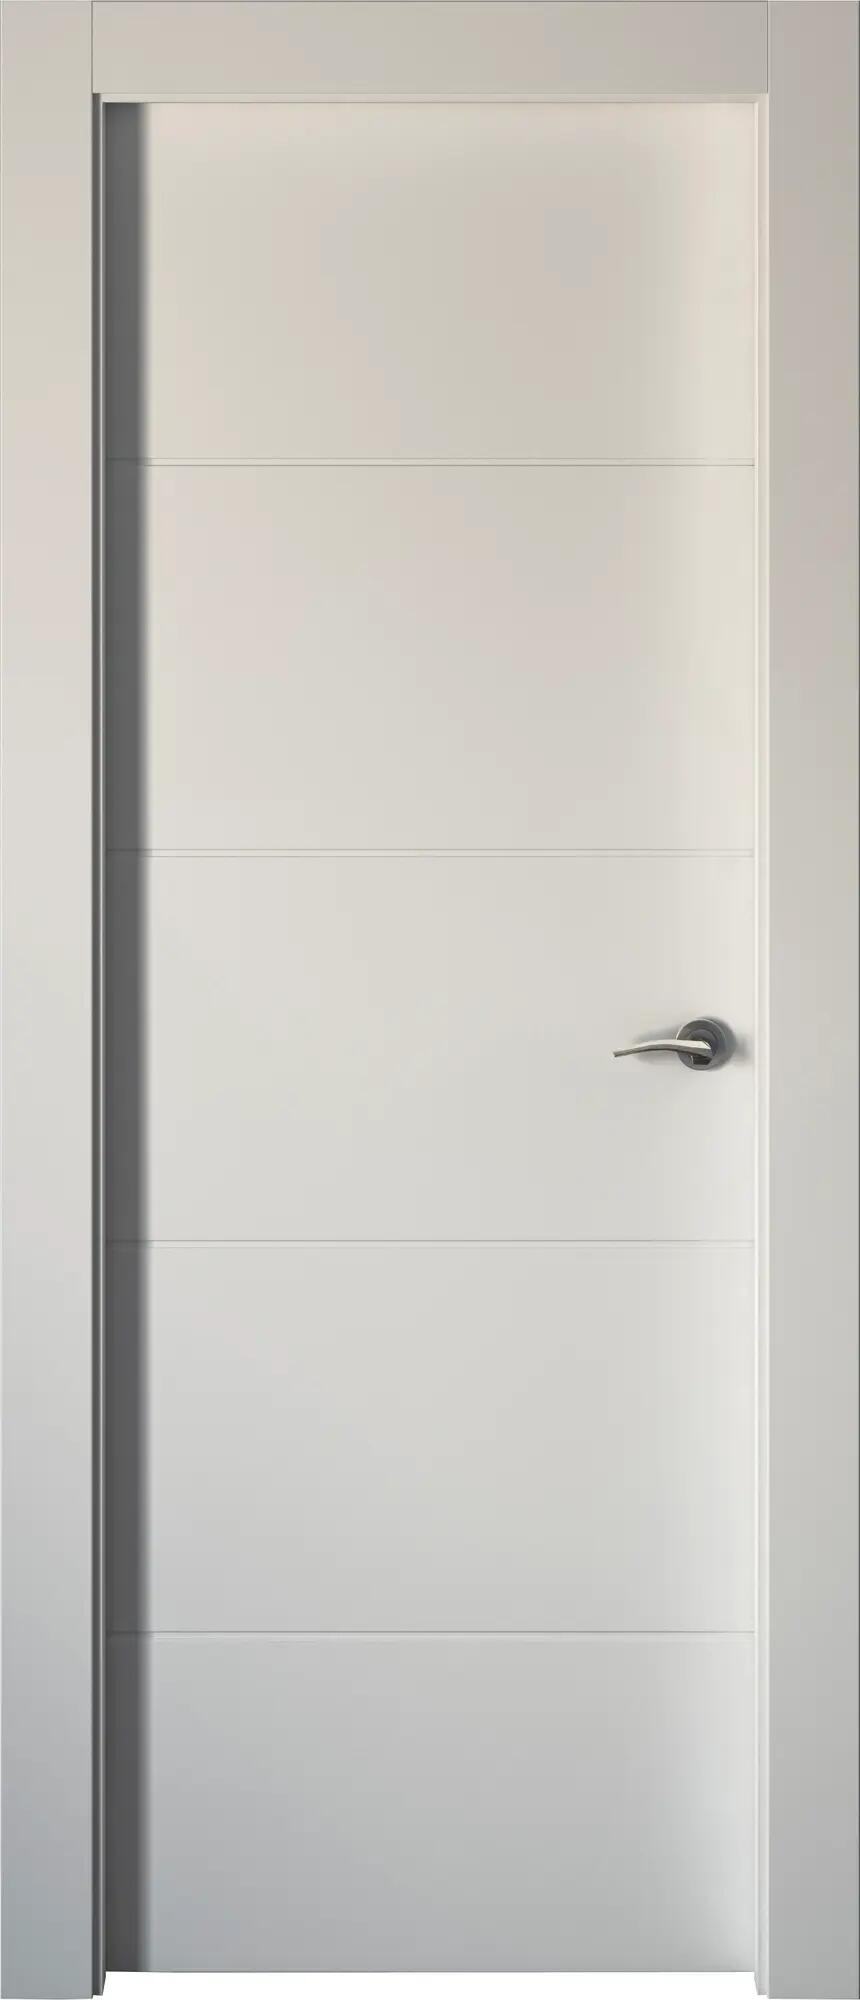 Puerta holanda blanco apertura izquierda 72.5cm